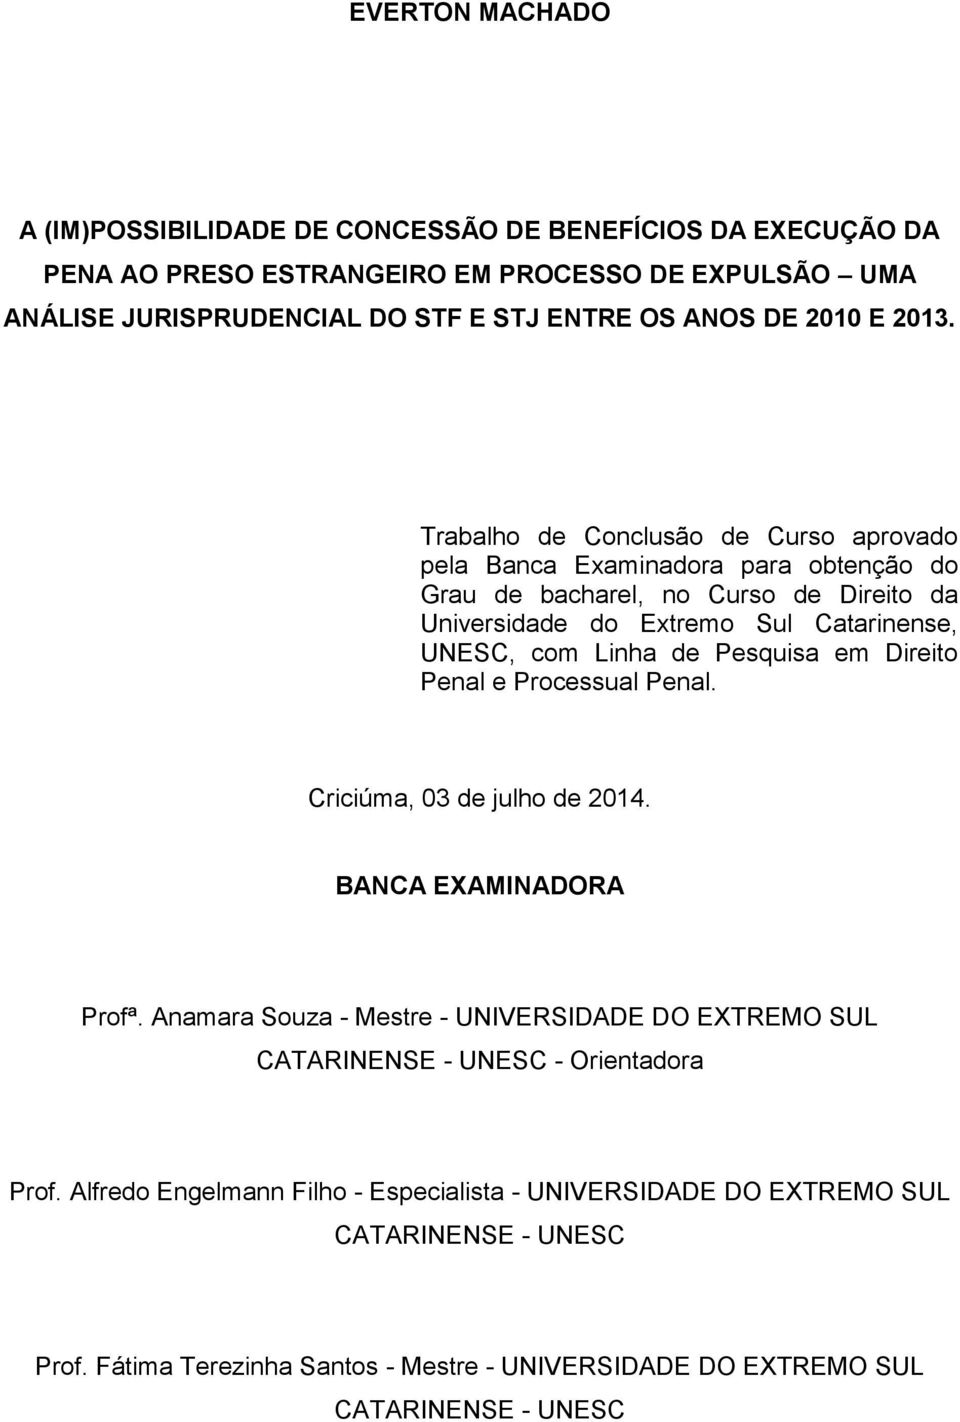 Trabalho de Conclusão de Curso aprovado pela Banca Examinadora para obtenção do Grau de bacharel, no Curso de Direito da Universidade do Extremo Sul Catarinense, UNESC, com Linha de